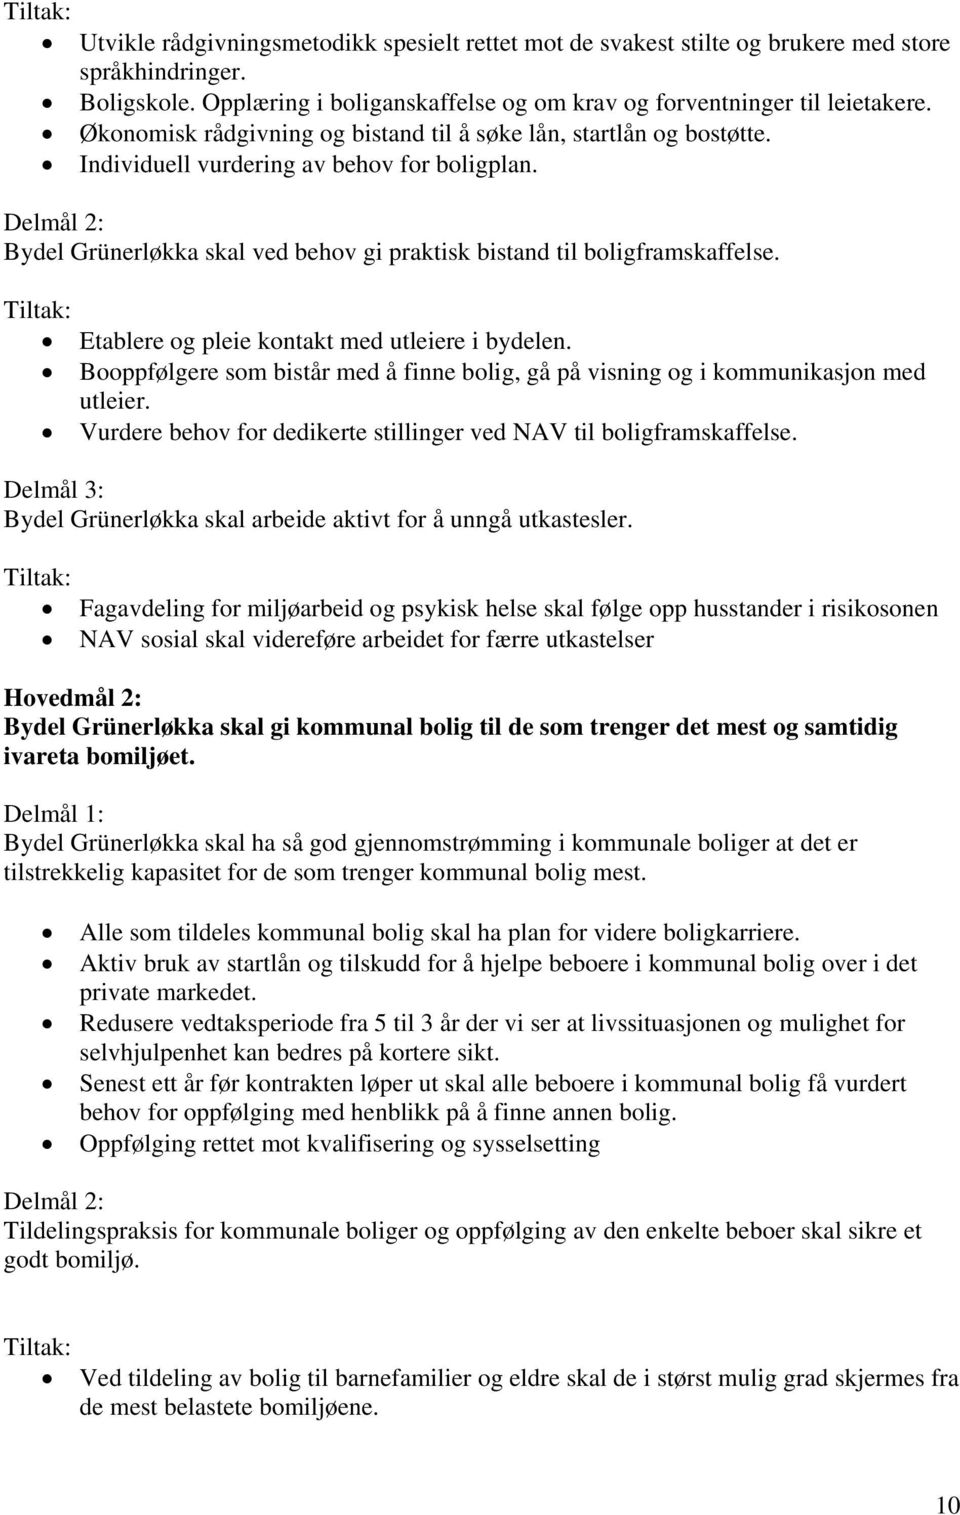 Delmål 2: Bydel Grünerløkka skal ved behov gi praktisk bistand til boligframskaffelse. Etablere og pleie kontakt med utleiere i bydelen.